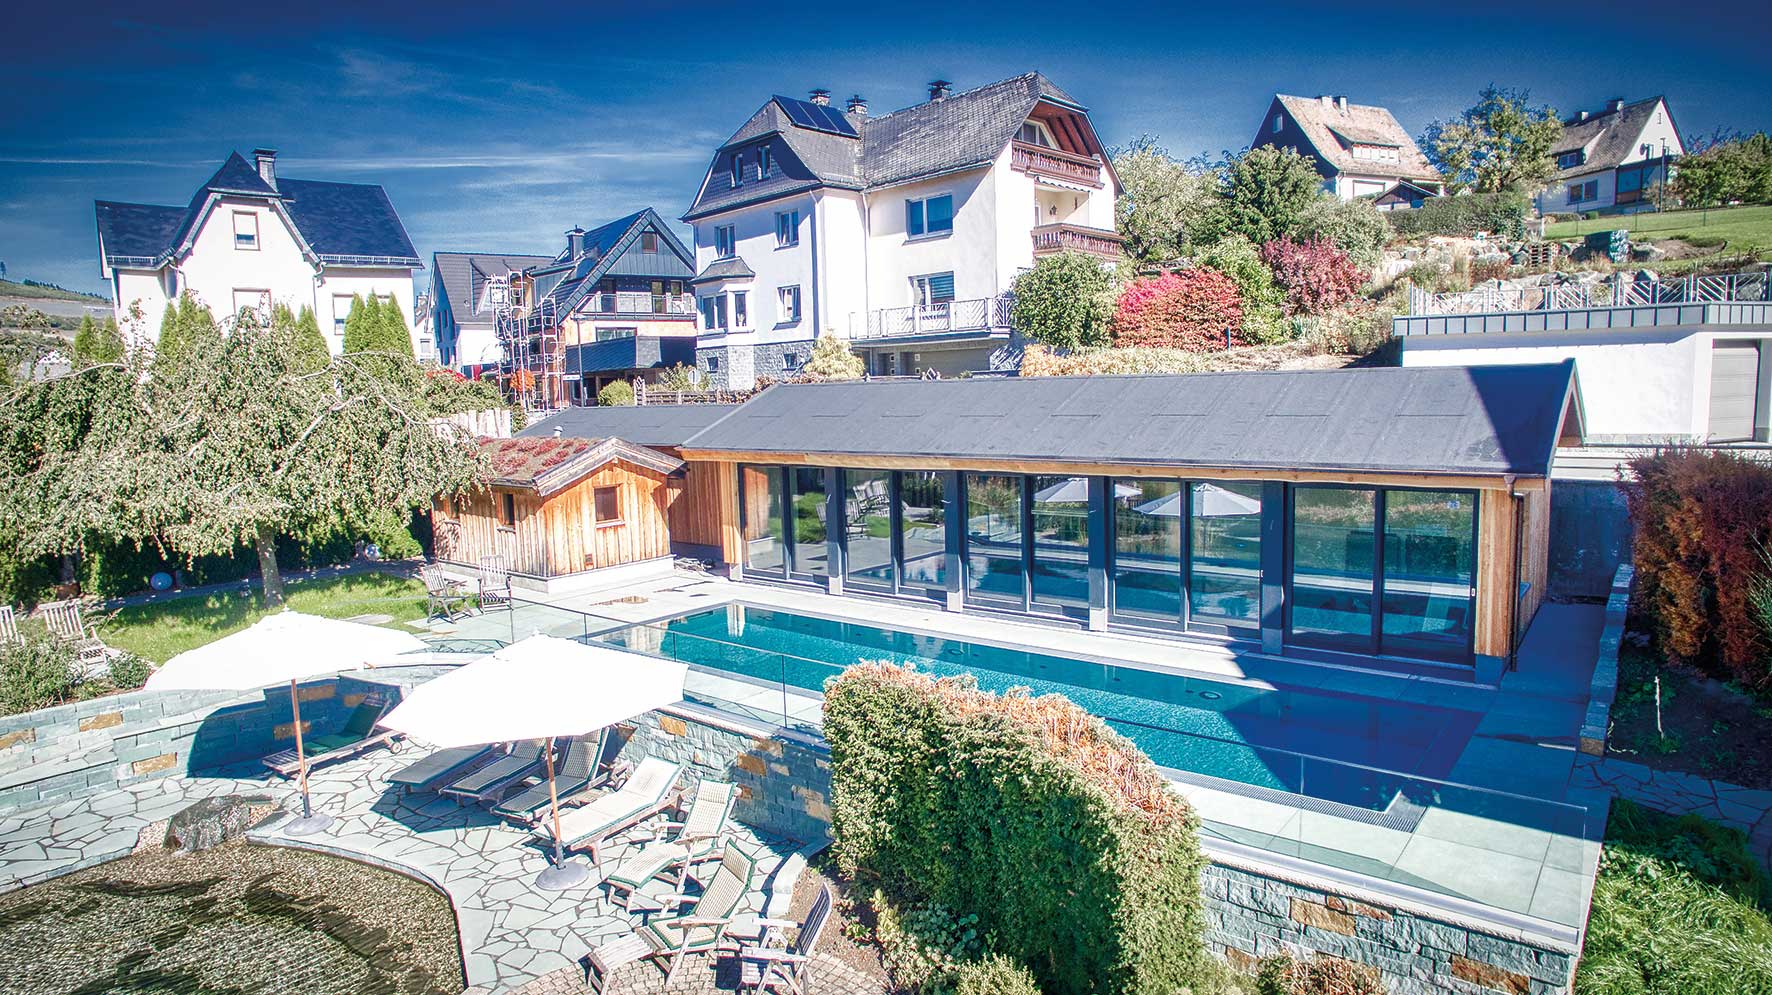 Foto vom beheizten Pool im Flair Hotel Nieder im Sauerland inklusive der Ruheliegen